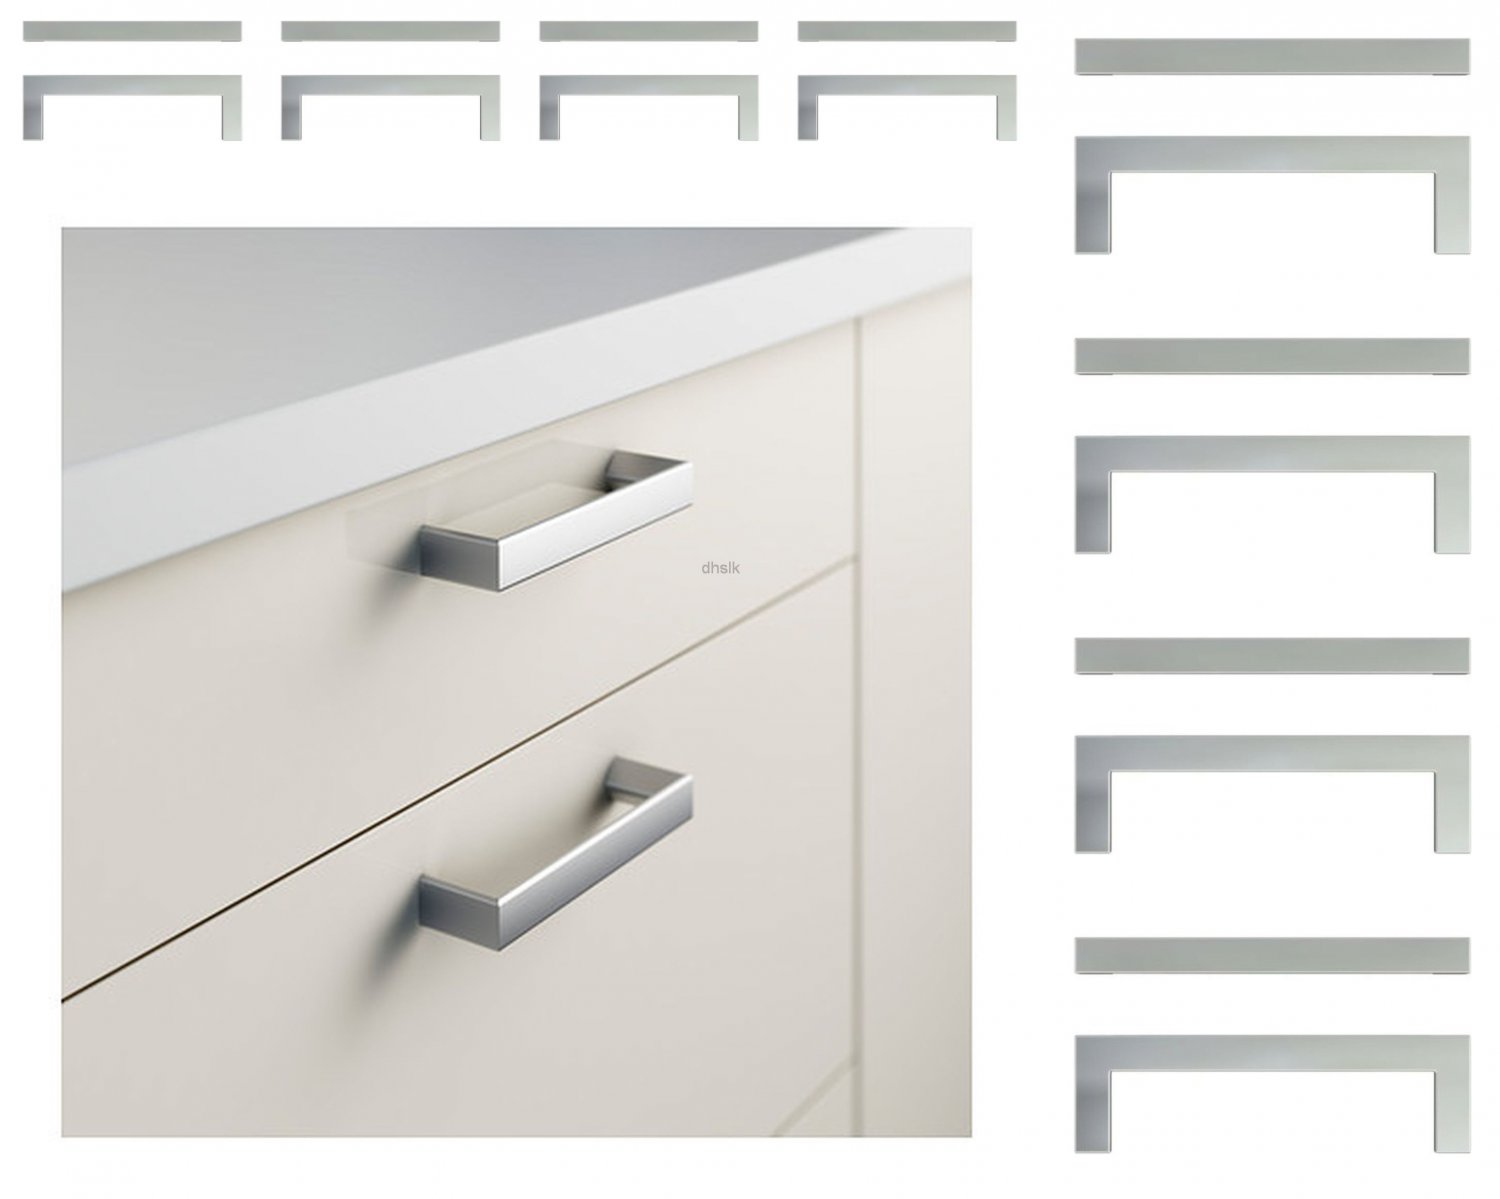  Ikea Kitchen Cabinet Door Handles Uk for Large Space